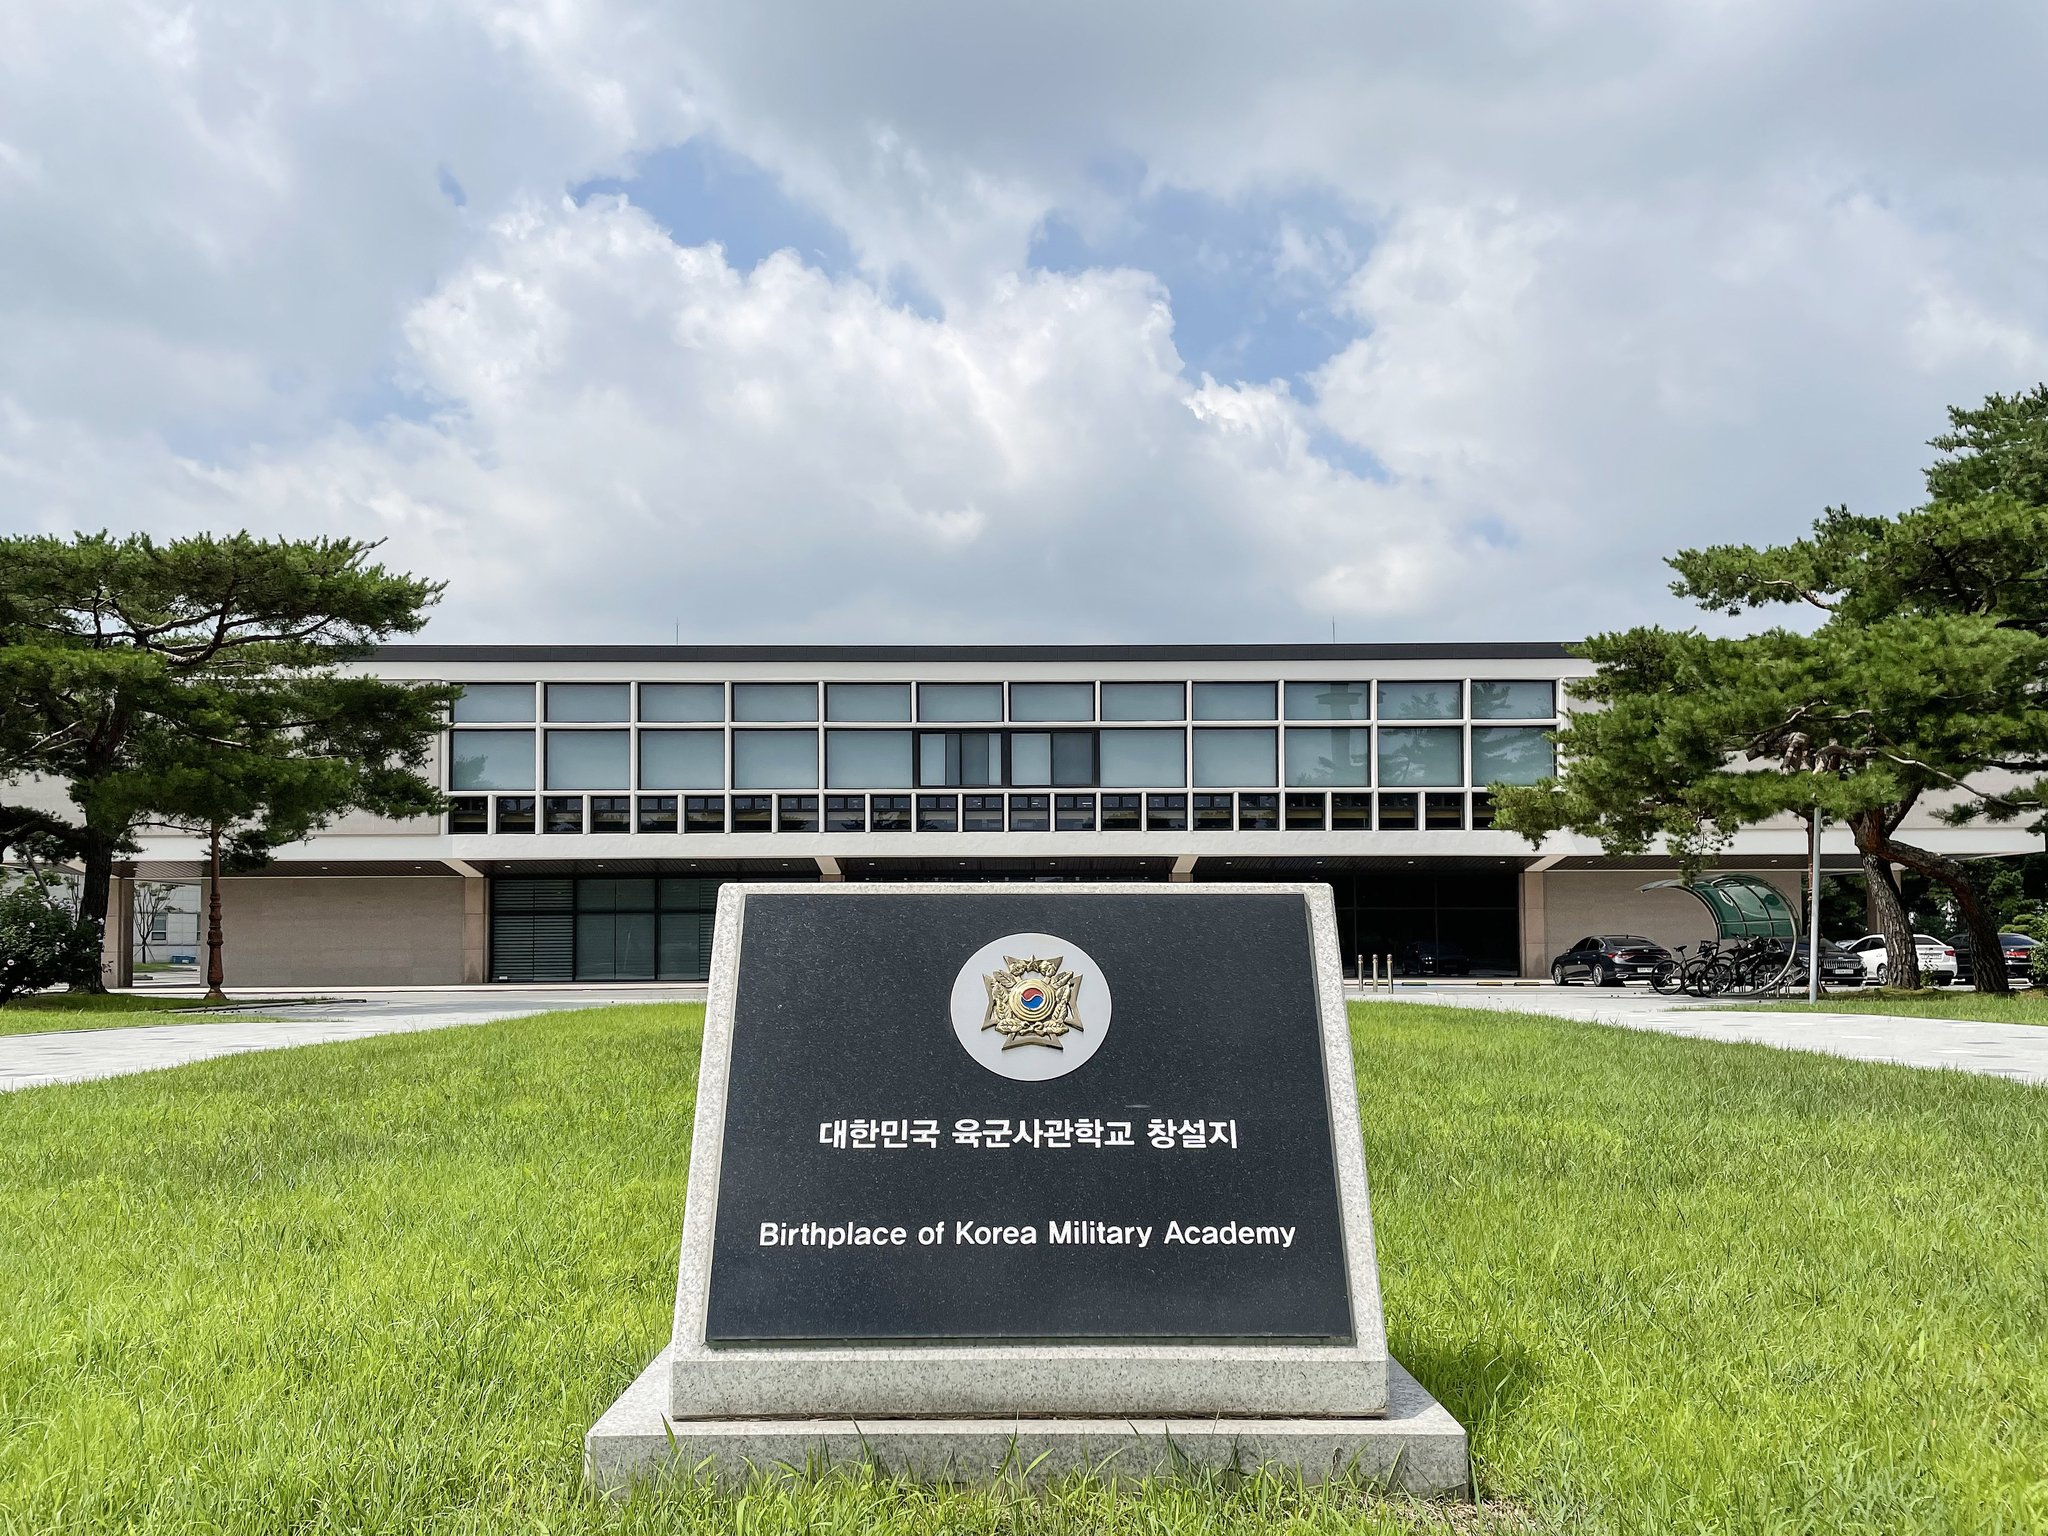 육군사관학교 생도들이 이용하는 우당도서관 앞에는 육사 창설지를 나타내는 표지석이 세워져 있다. 김상진 기자